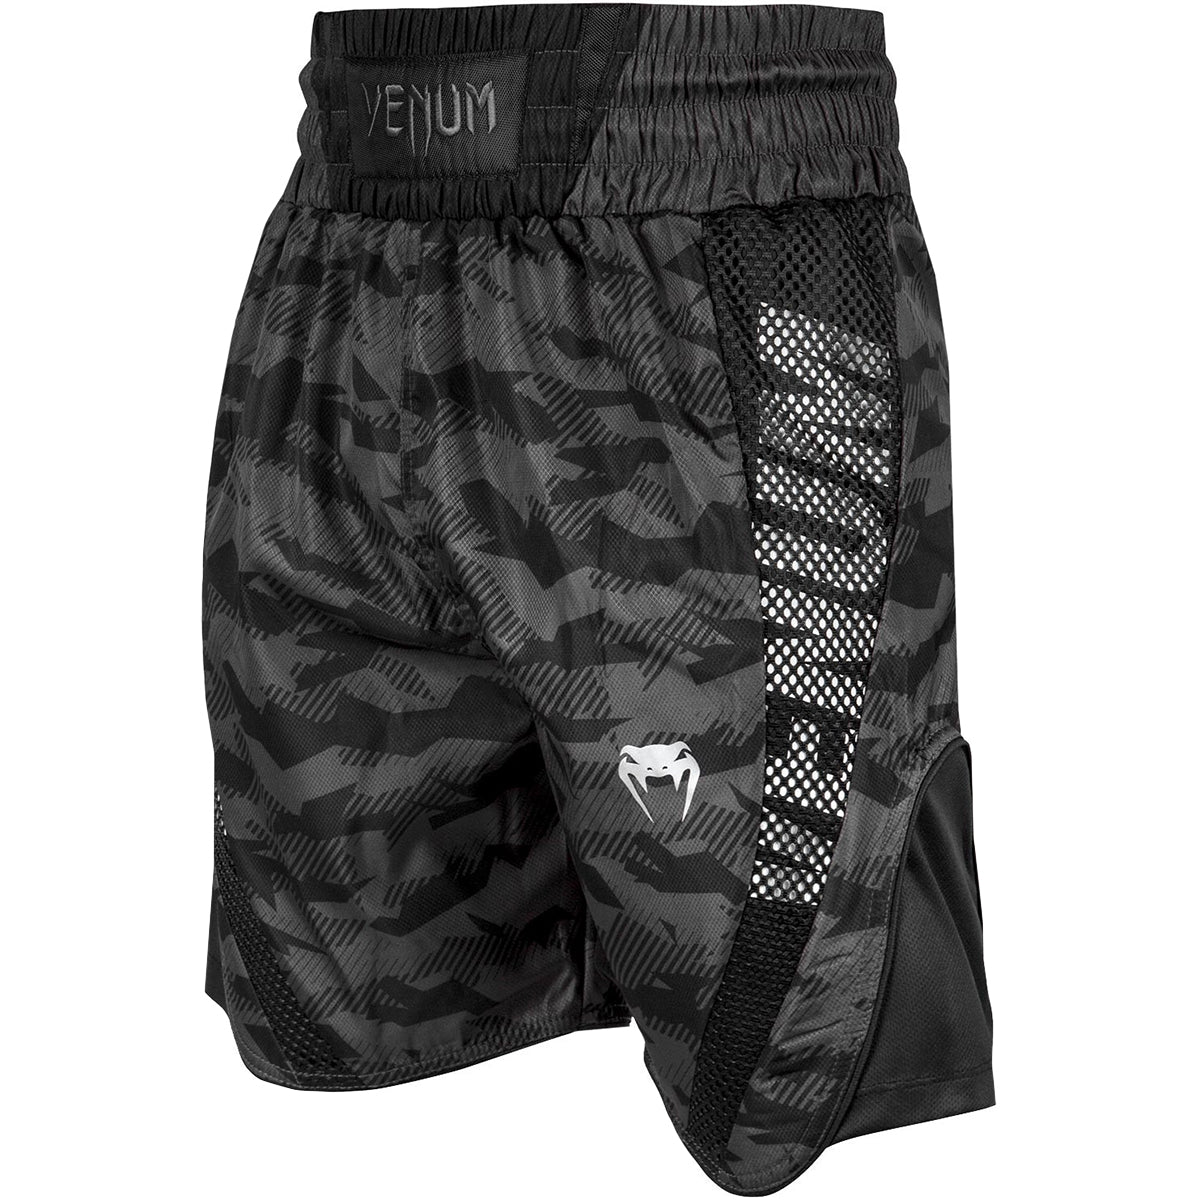 Venum Elite Boxing Shorts - Urban Camo/Black Venum